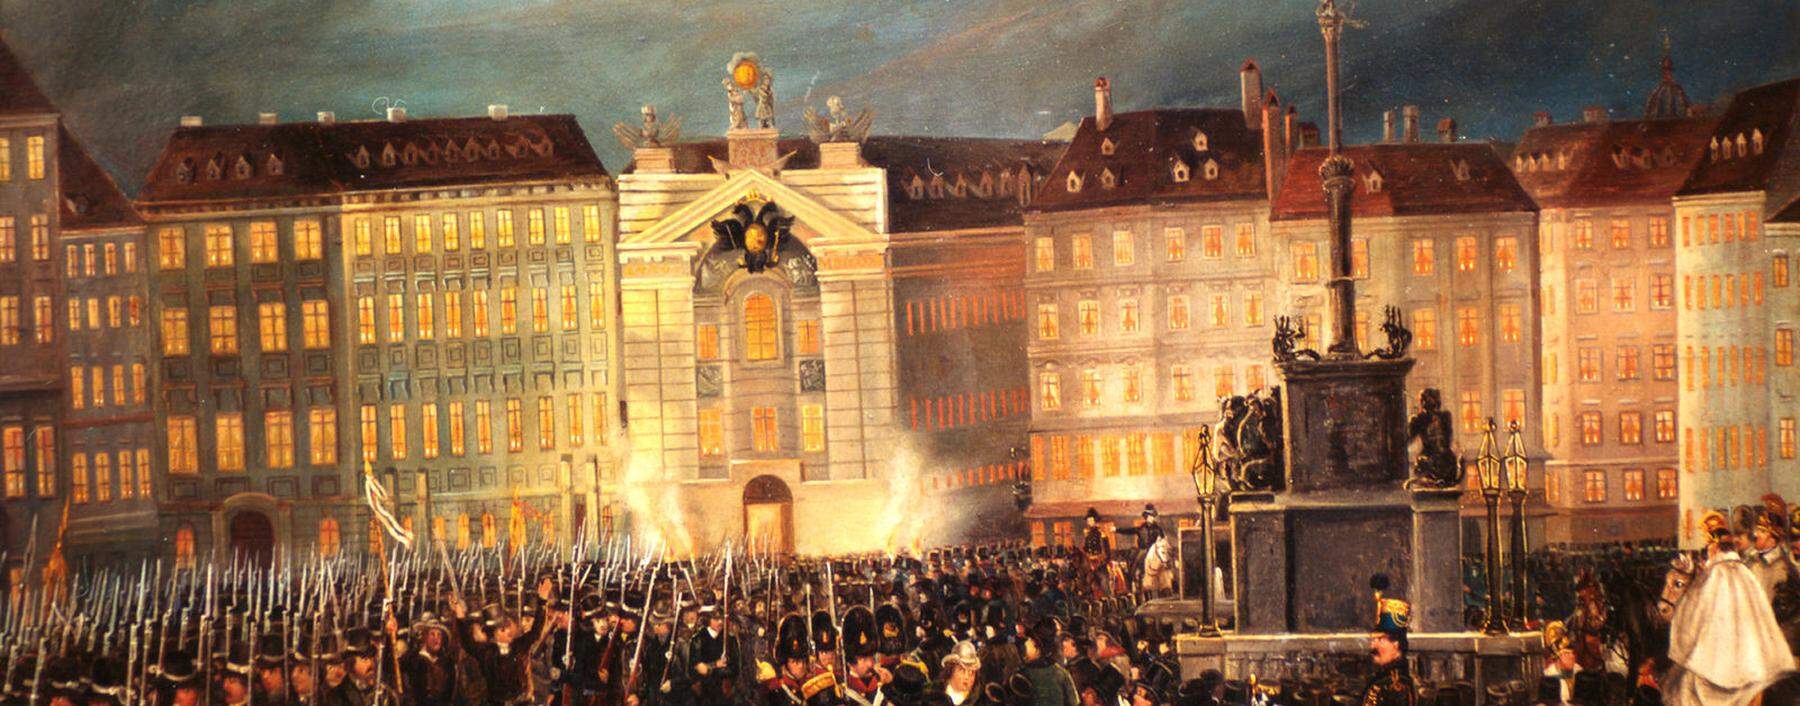 Defilee der Nationalgarde am Platz Am Hof in Wien 13./14. März 1848. Sie sollte für Sicherheit und Ordnung sorgen.